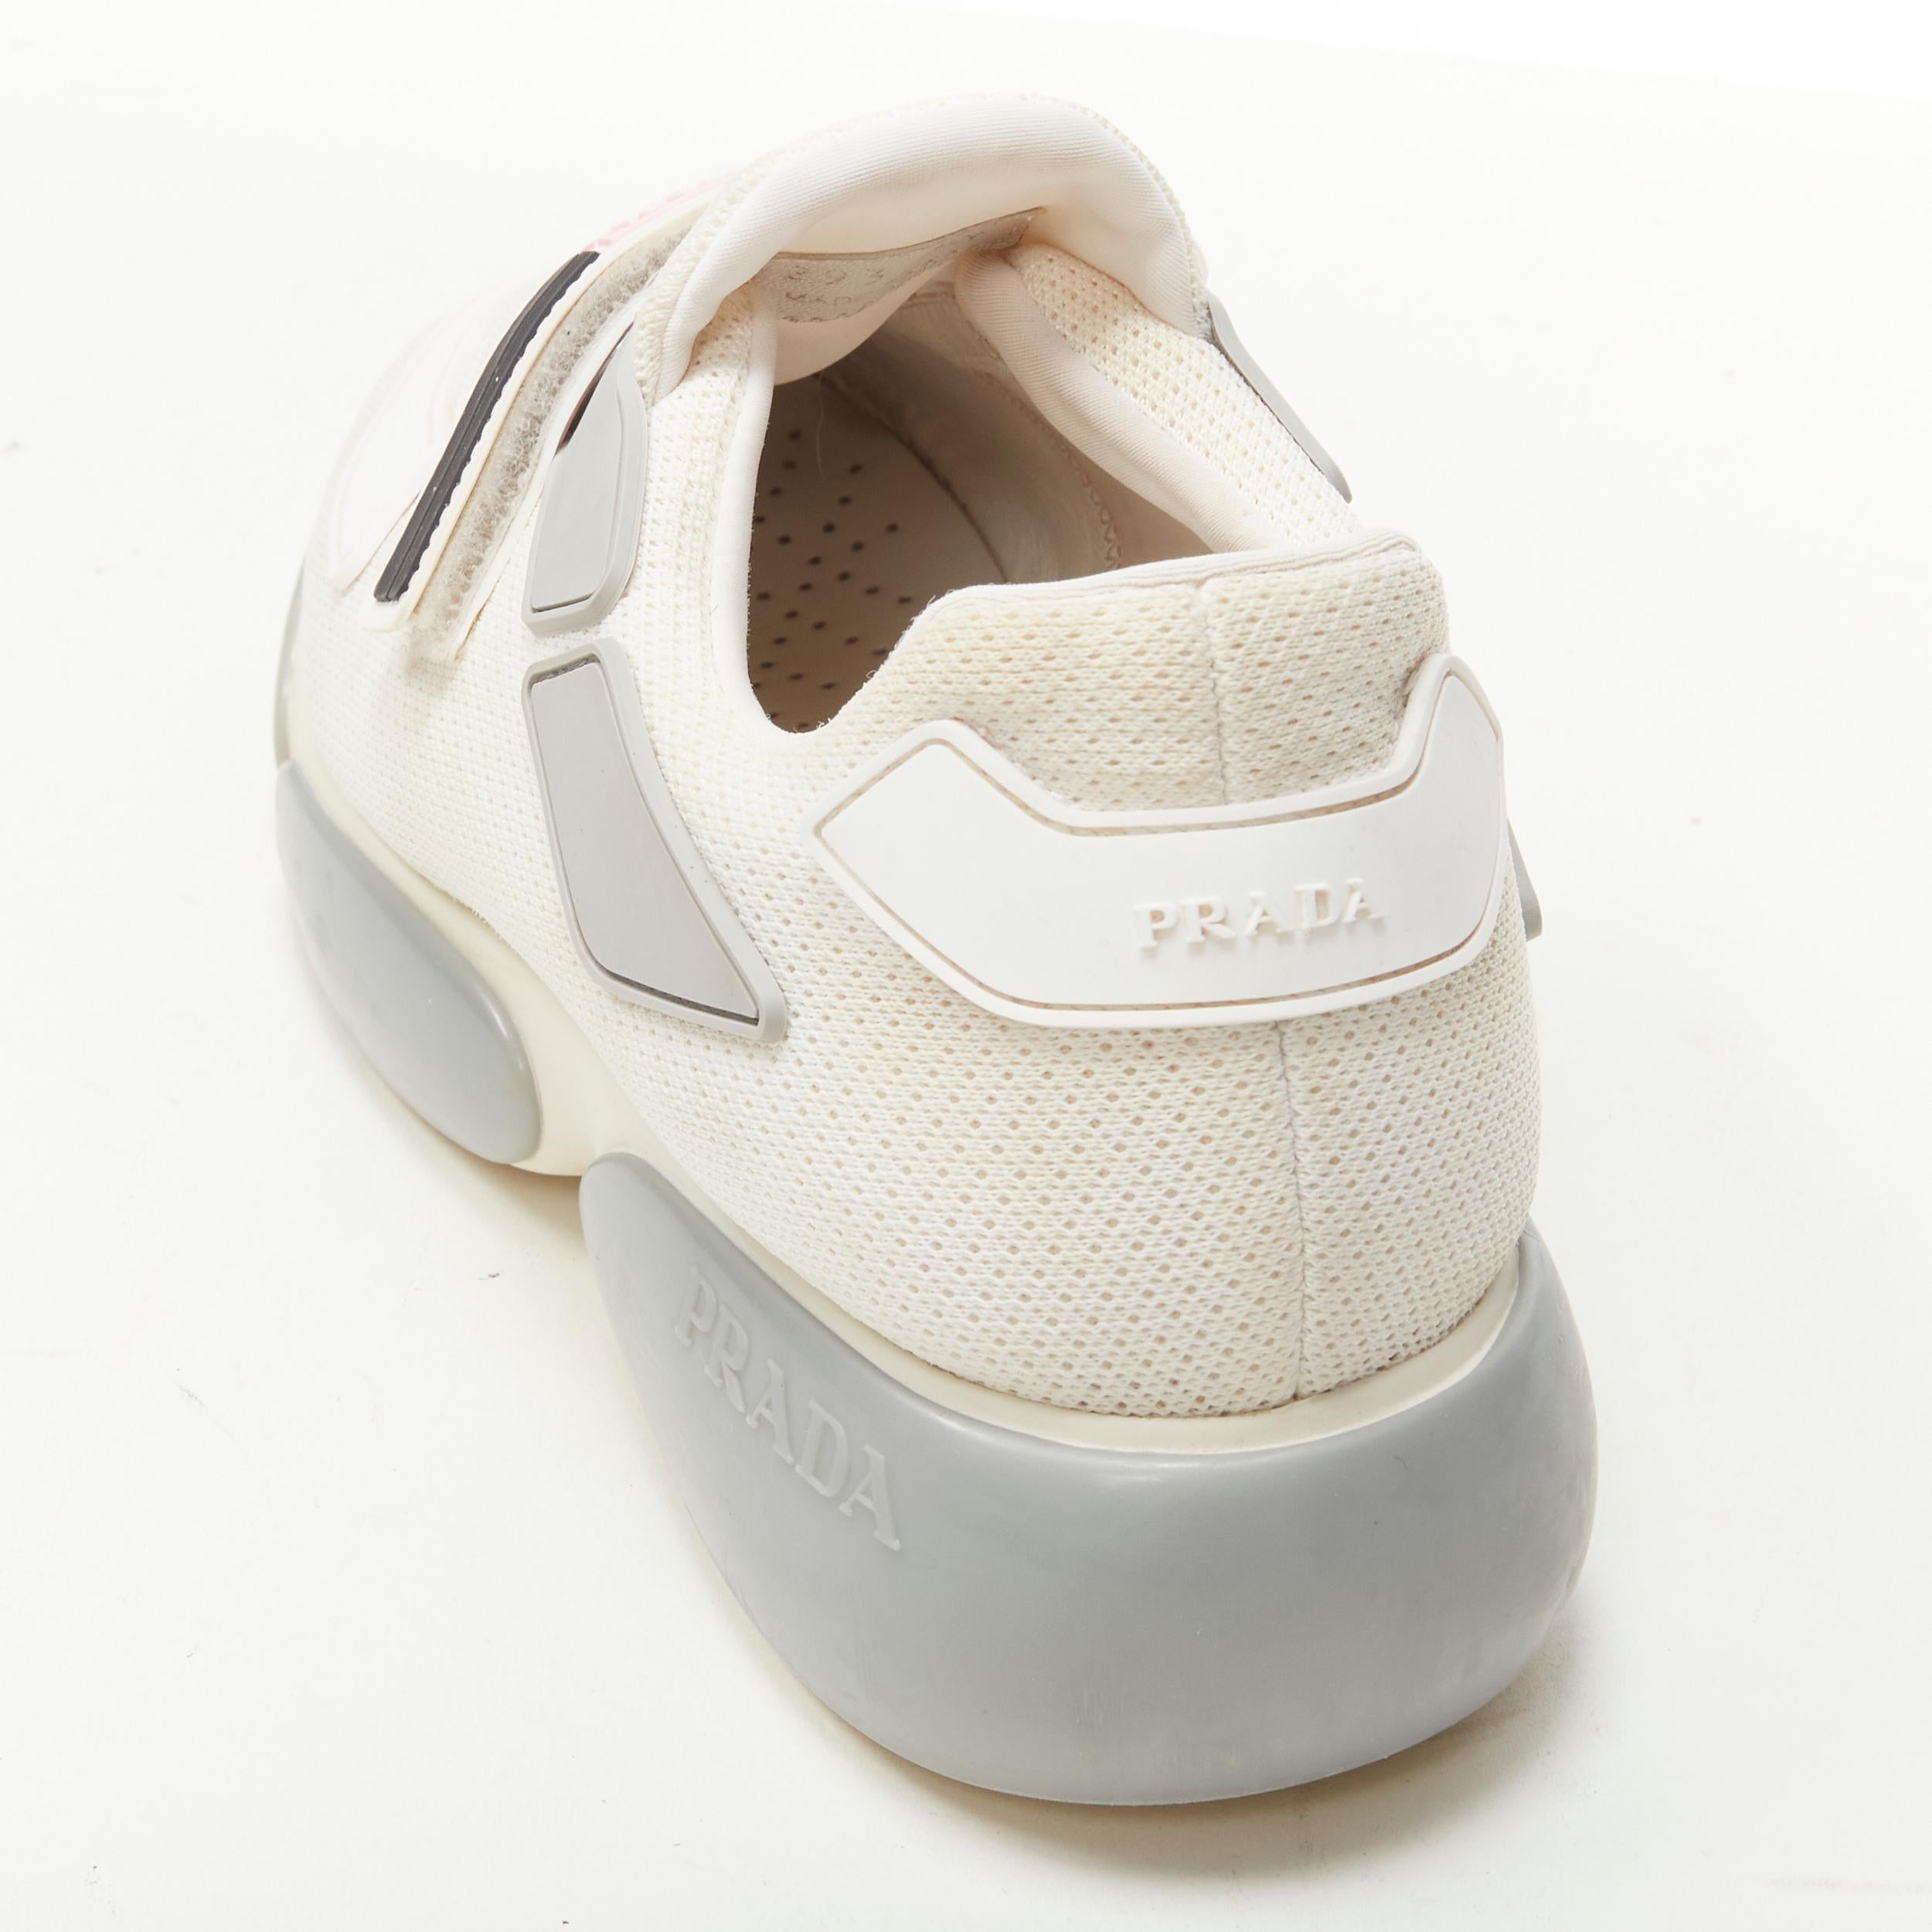 PRADA Cloudbust white mesh pink strap low top sneaker EU36 1